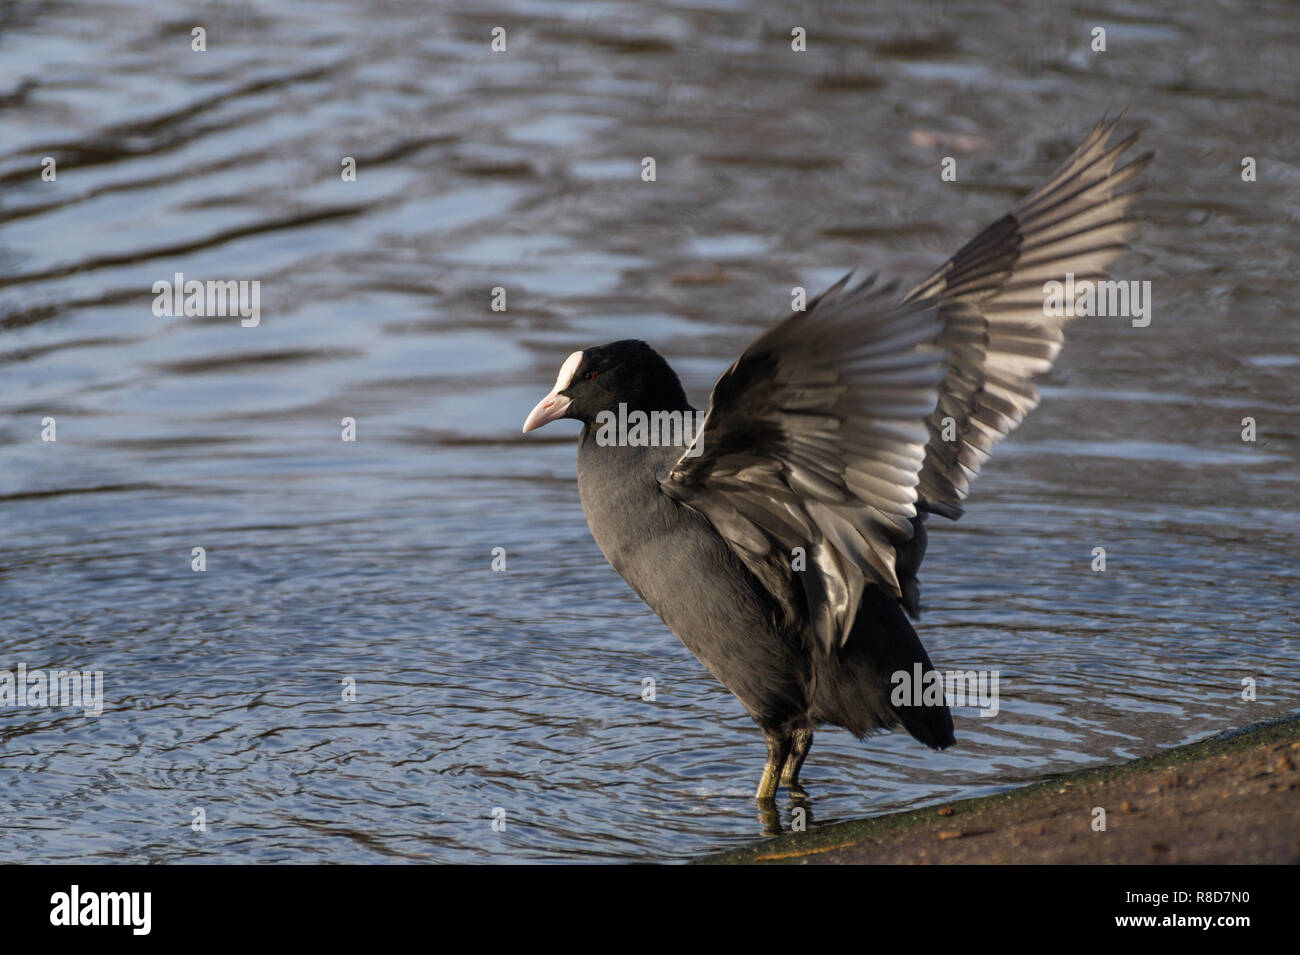 Close-up de una Focha Común (Fulica atra) con alas extendidas en el lago. Foto de stock